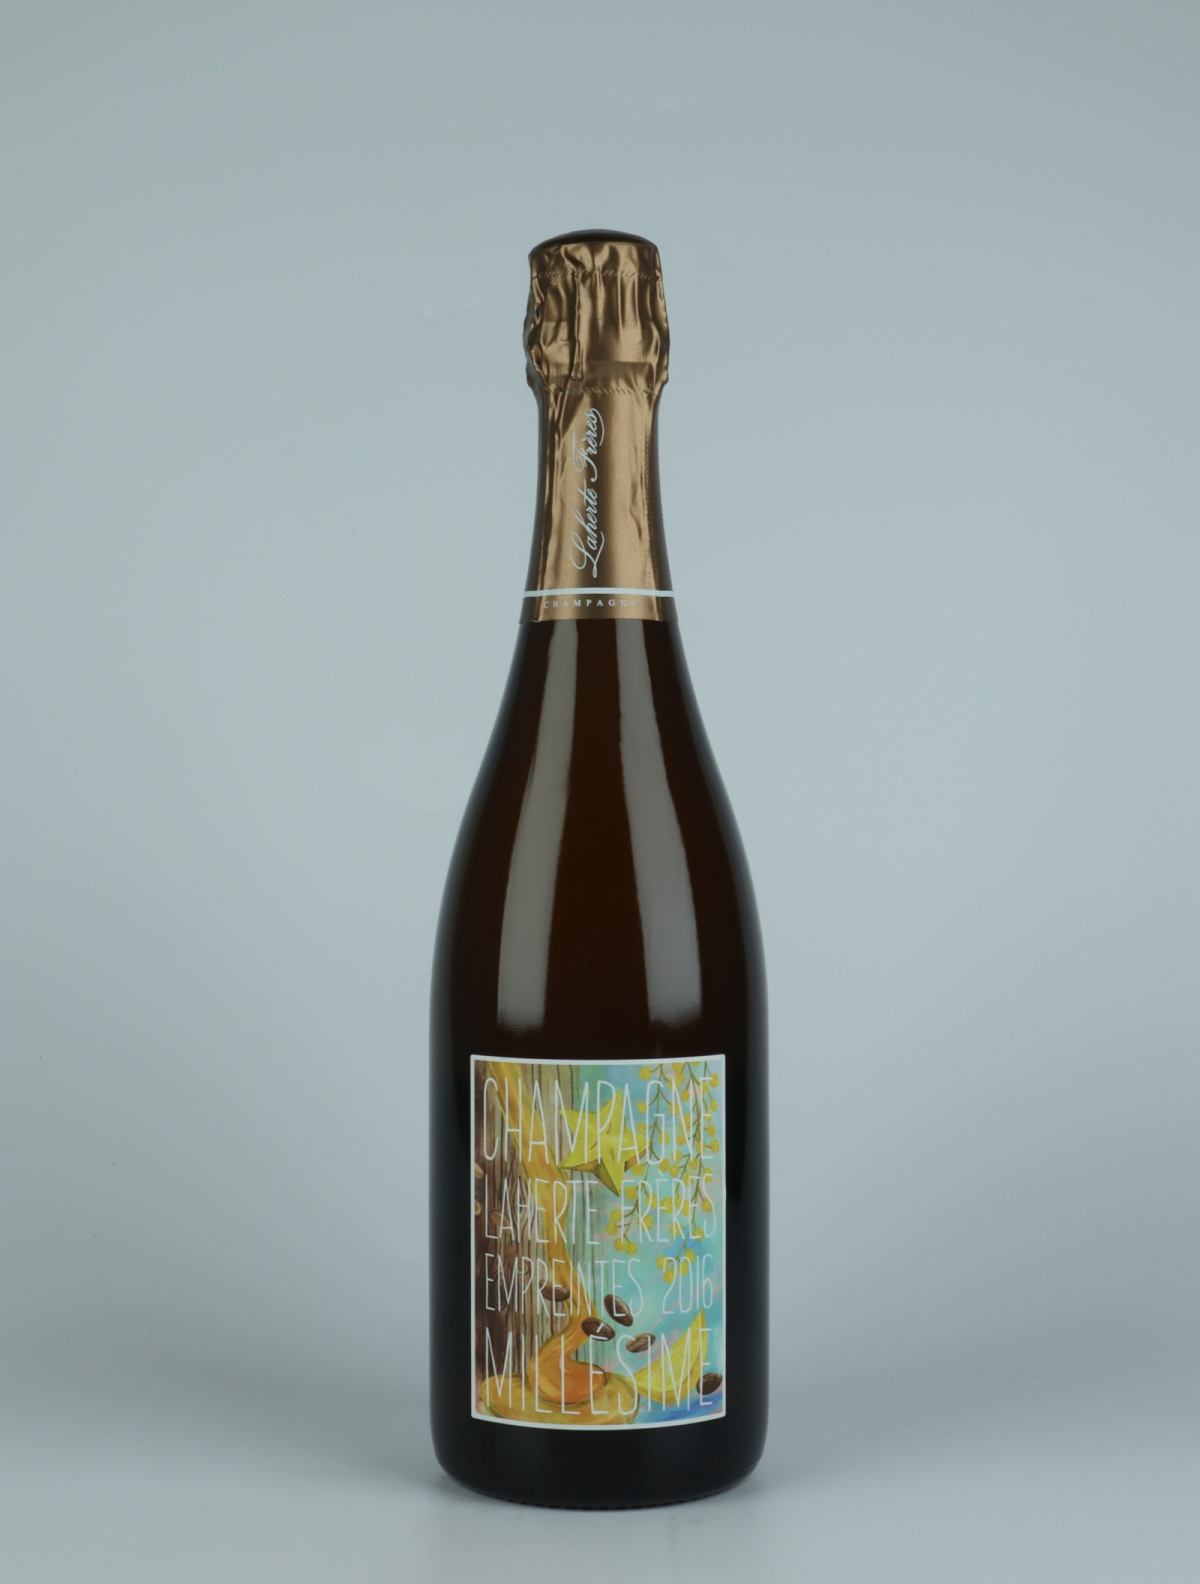 A bottle 2016 Les Empreintes - Extra Brut Sparkling from Laherte Frères, Champagne in France